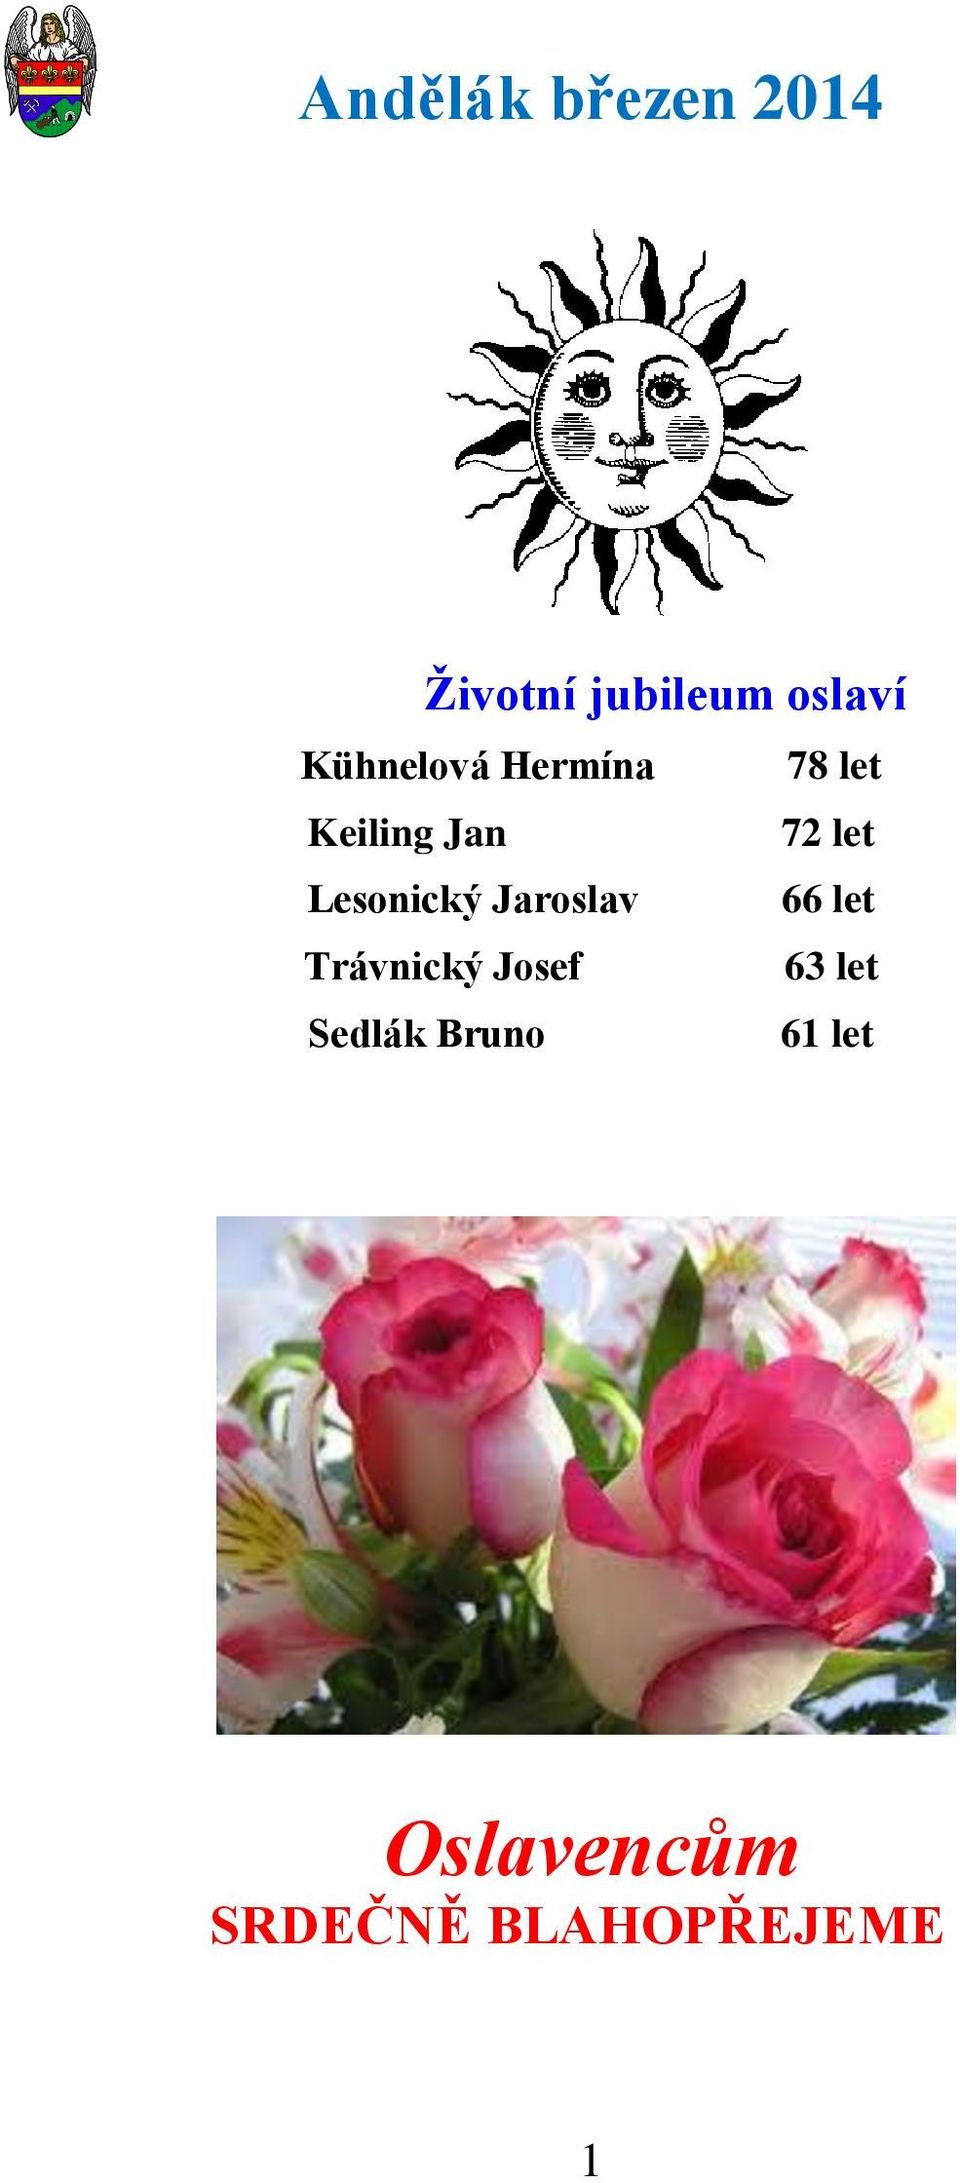 Jaroslav 66 let Trávnický Josef 63 let